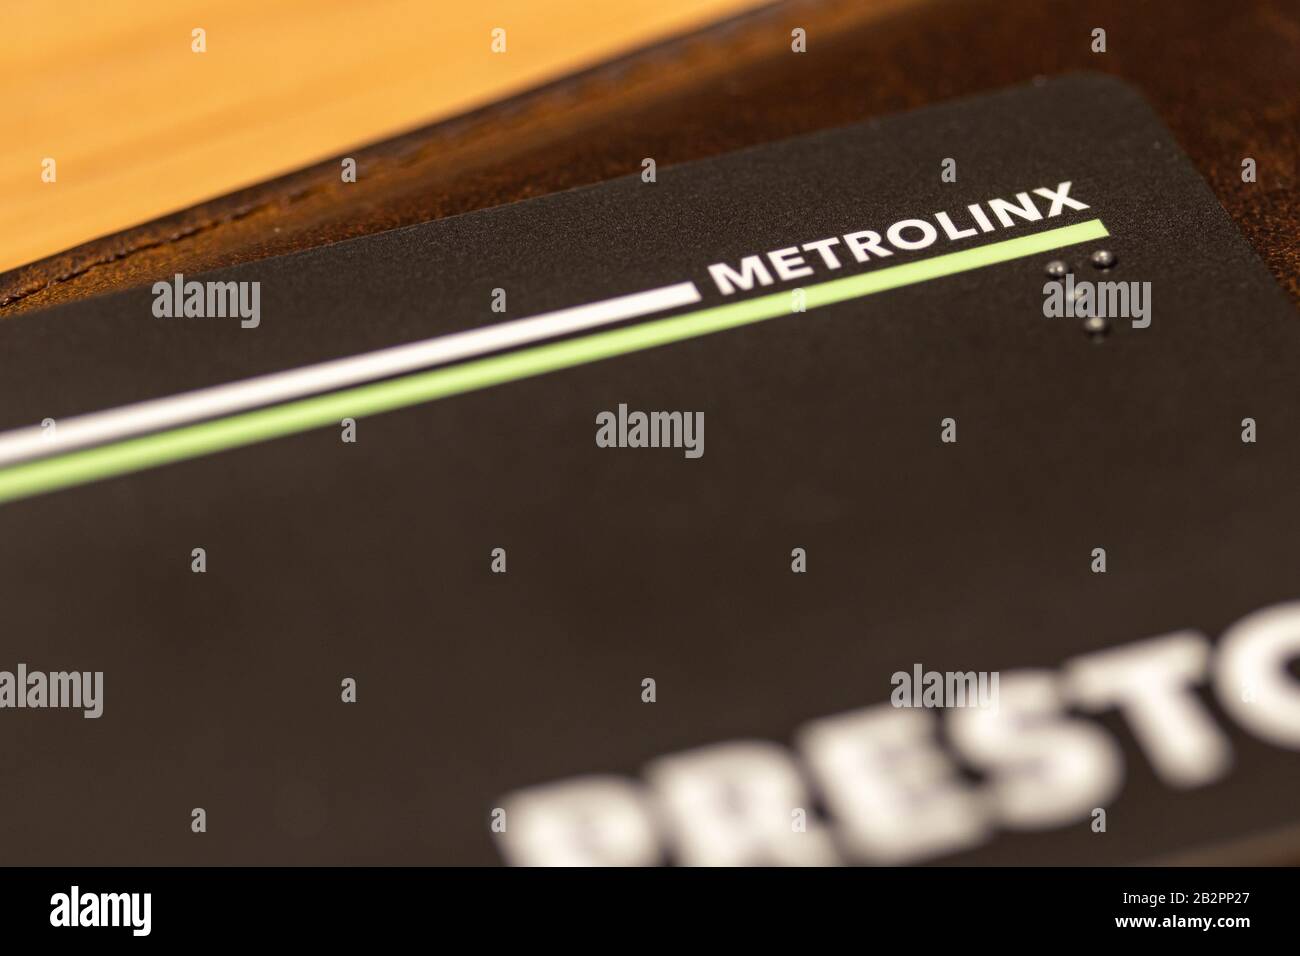 Metrolink, l'agence de la Couronne qui exploite le logo du transport en commun dans la région de Toronto, se concentre sur une carte Presto au-dessus d'un portefeuille. Banque D'Images